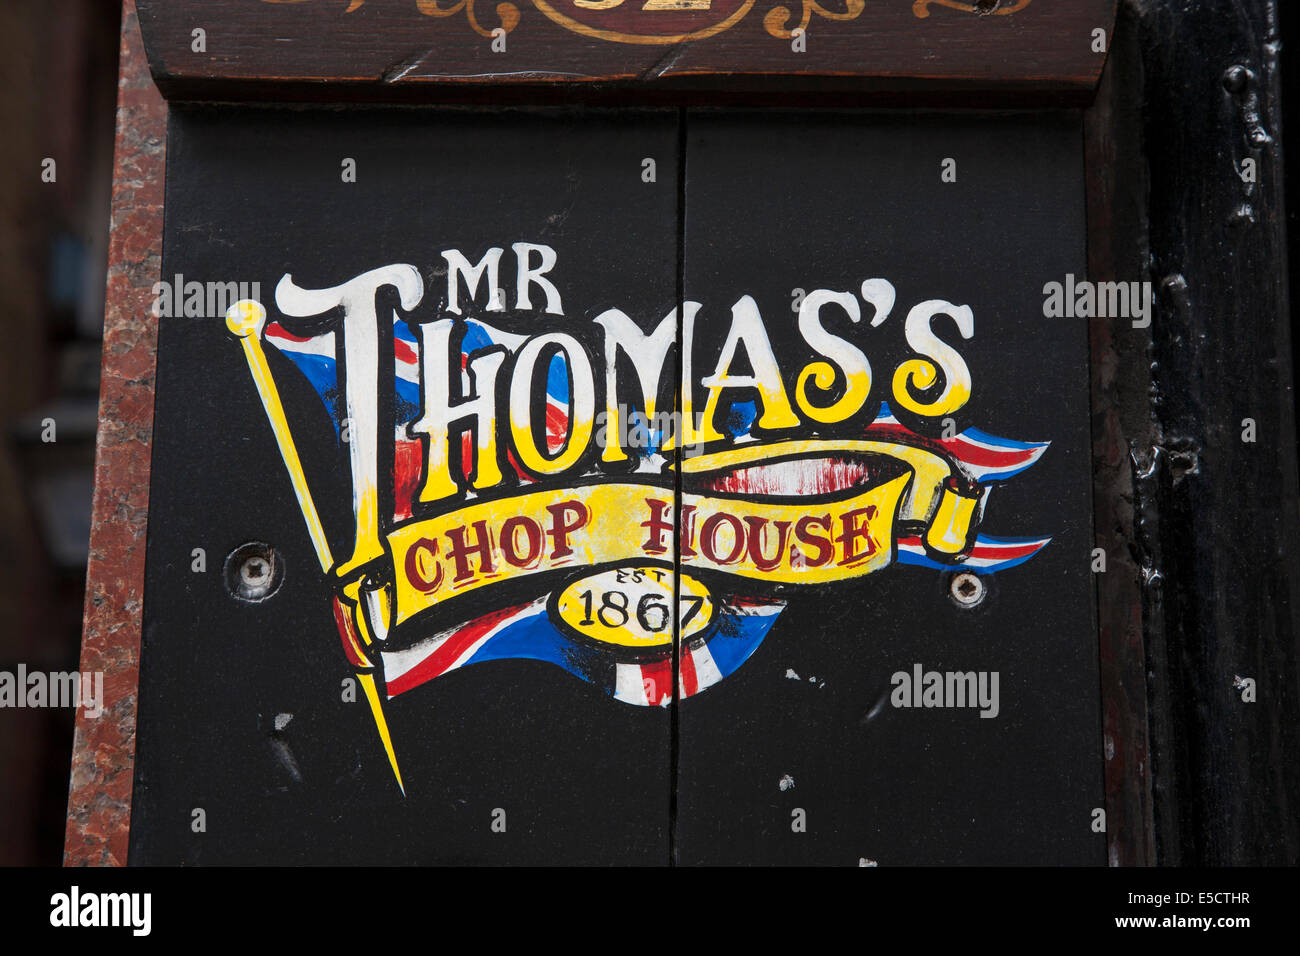 Herr Thomas Chop House Zeichen, Manchester, England, UK Stockfoto